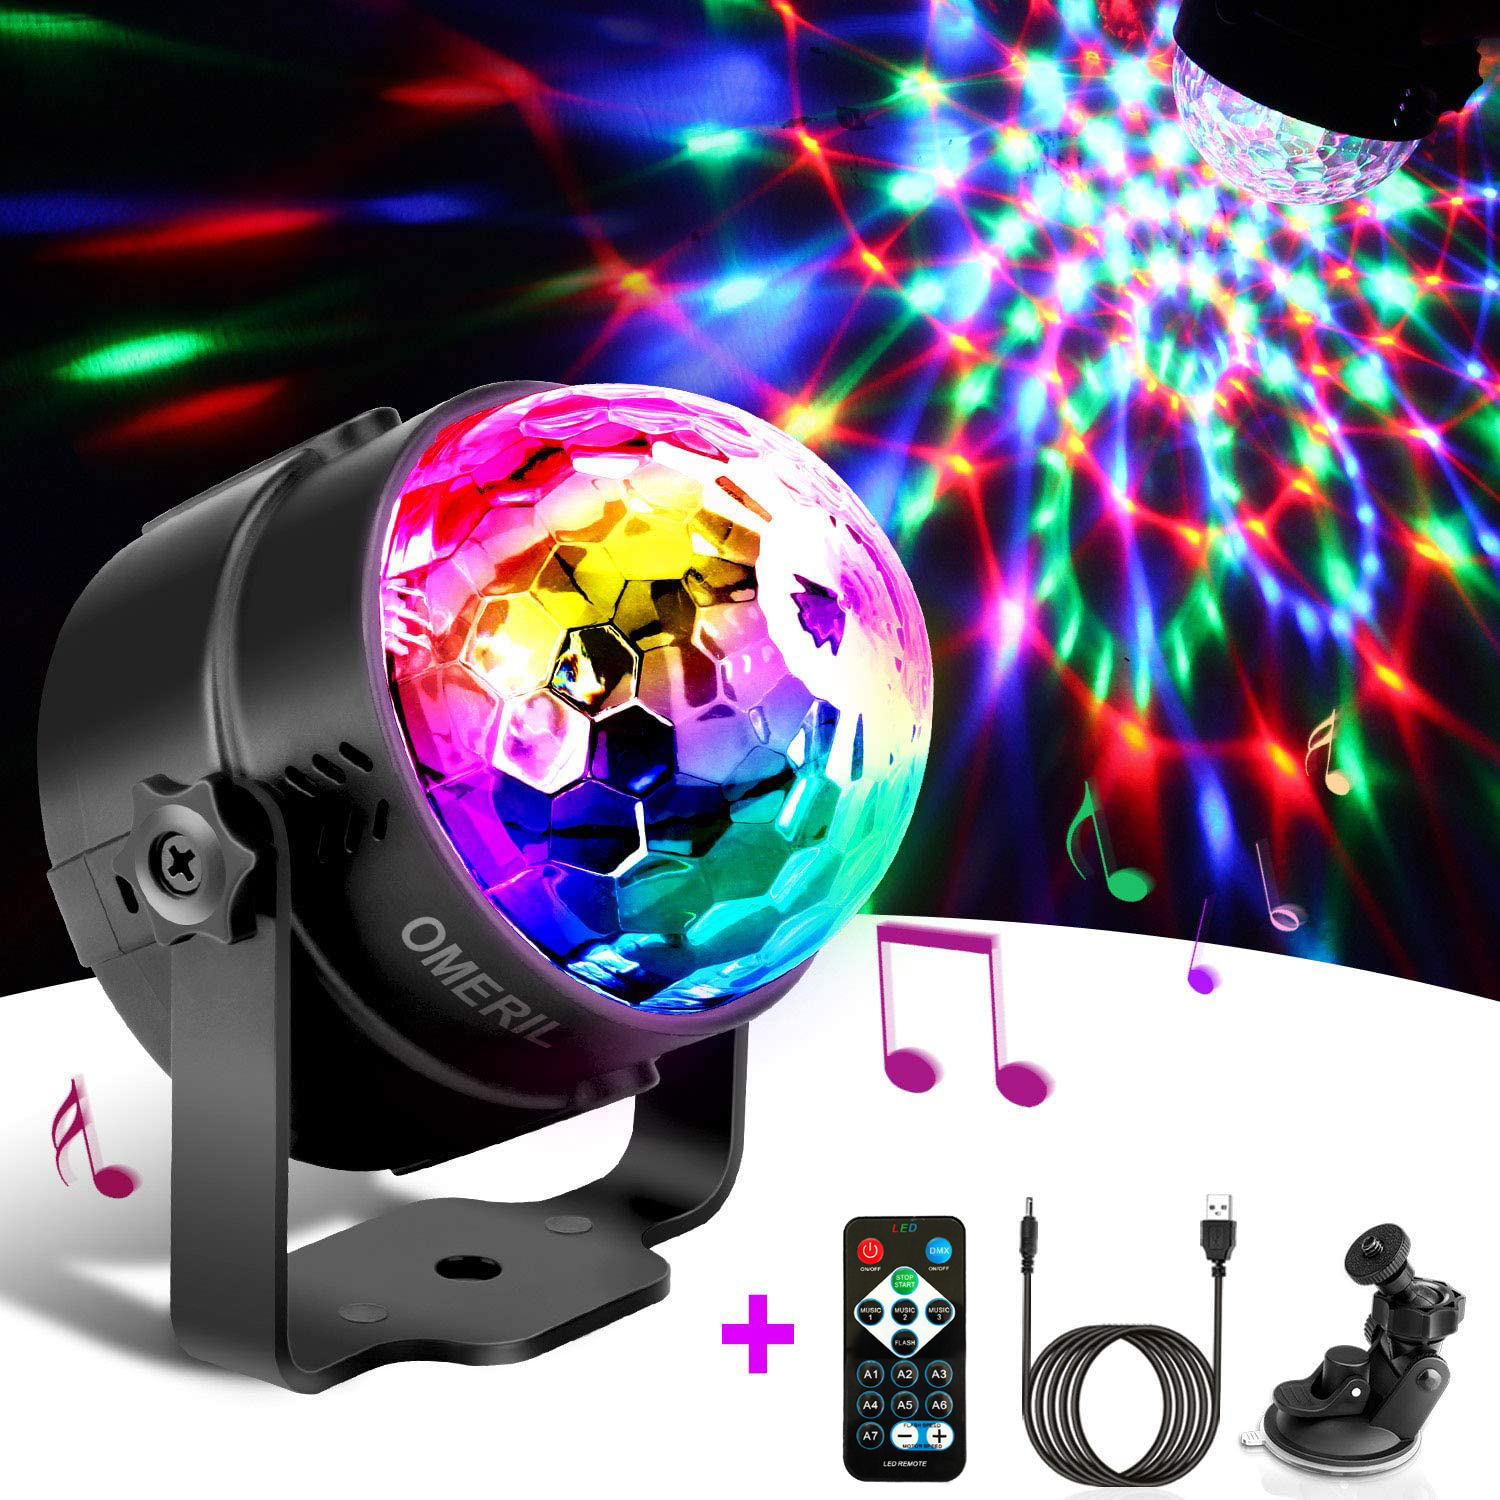 DJ Party Licht Discolicht 7 Farben 3 Modi Musikgesteuert mit Fernbedienung 